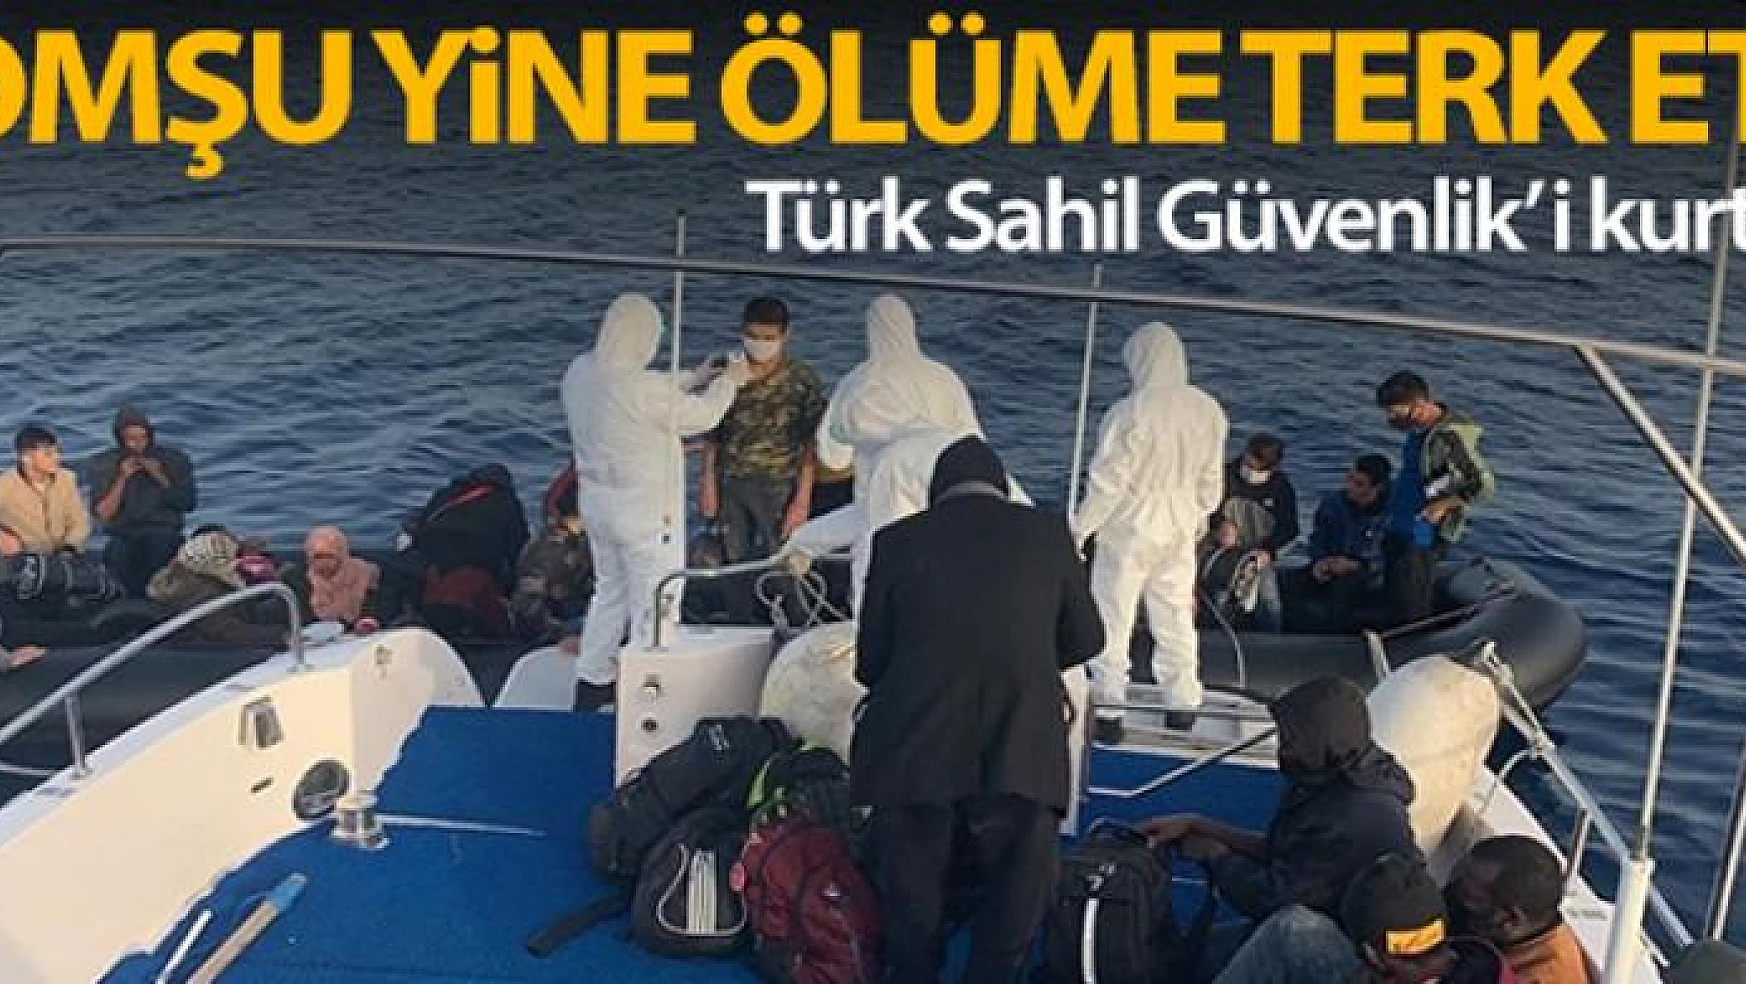 Yunan Sahil Güvenlik'i tarafından ölüme terk edilen düzensiz göçmenleri Türk Sahil Güvenlik'i kurtardı